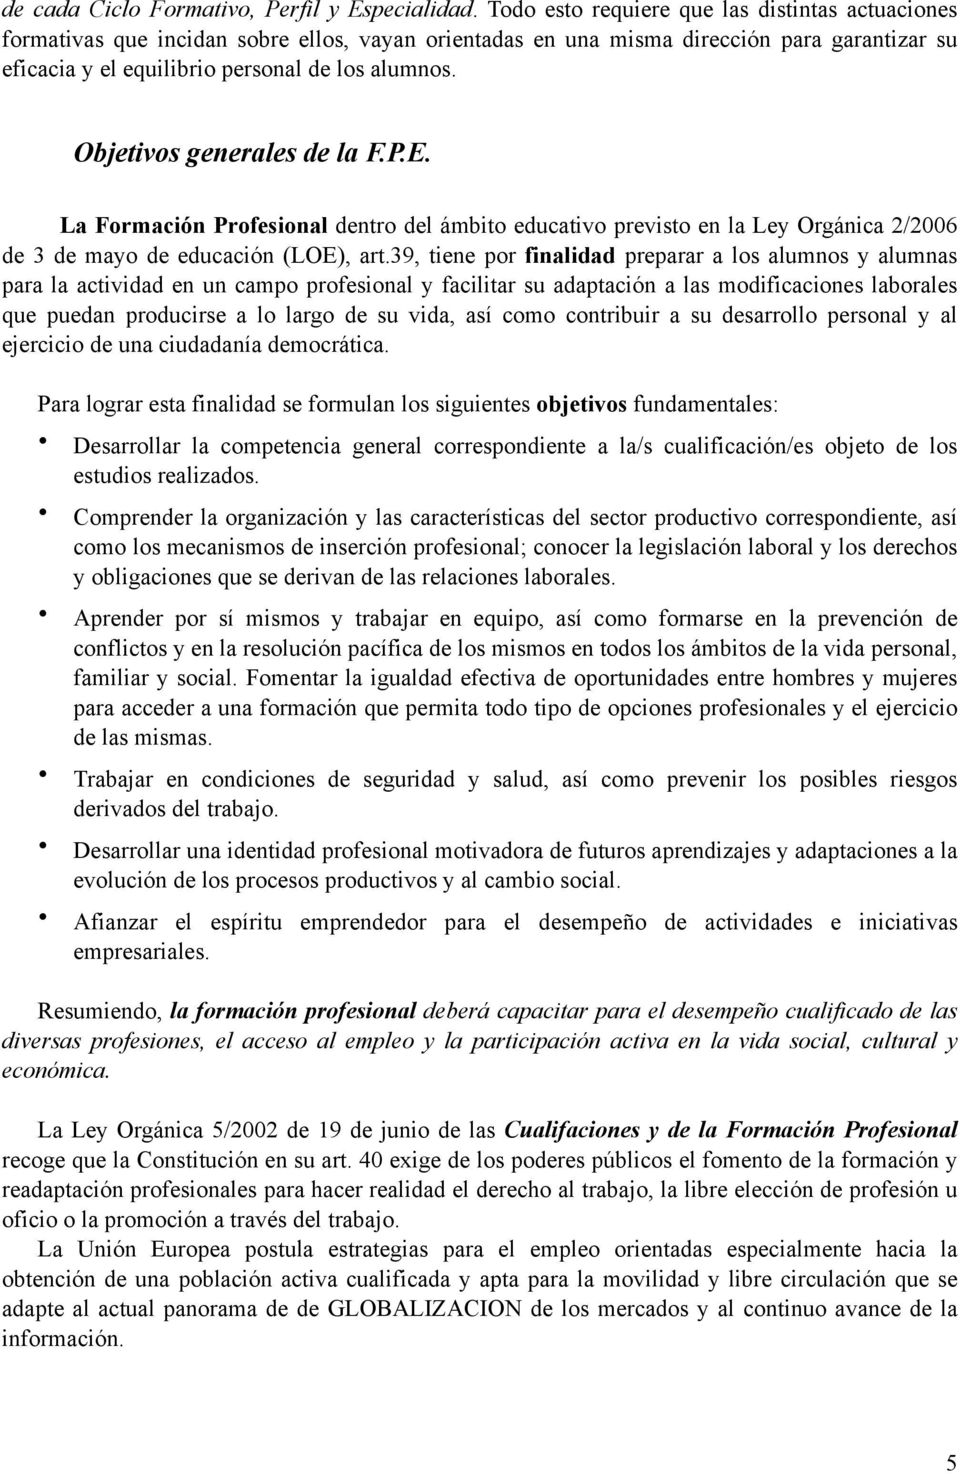 Objetivos generales de la F.P.E. La Formación Profesional dentro del ámbito educativo previsto en la Ley Orgánica 2/2006 de 3 de mayo de educación (LOE), art.